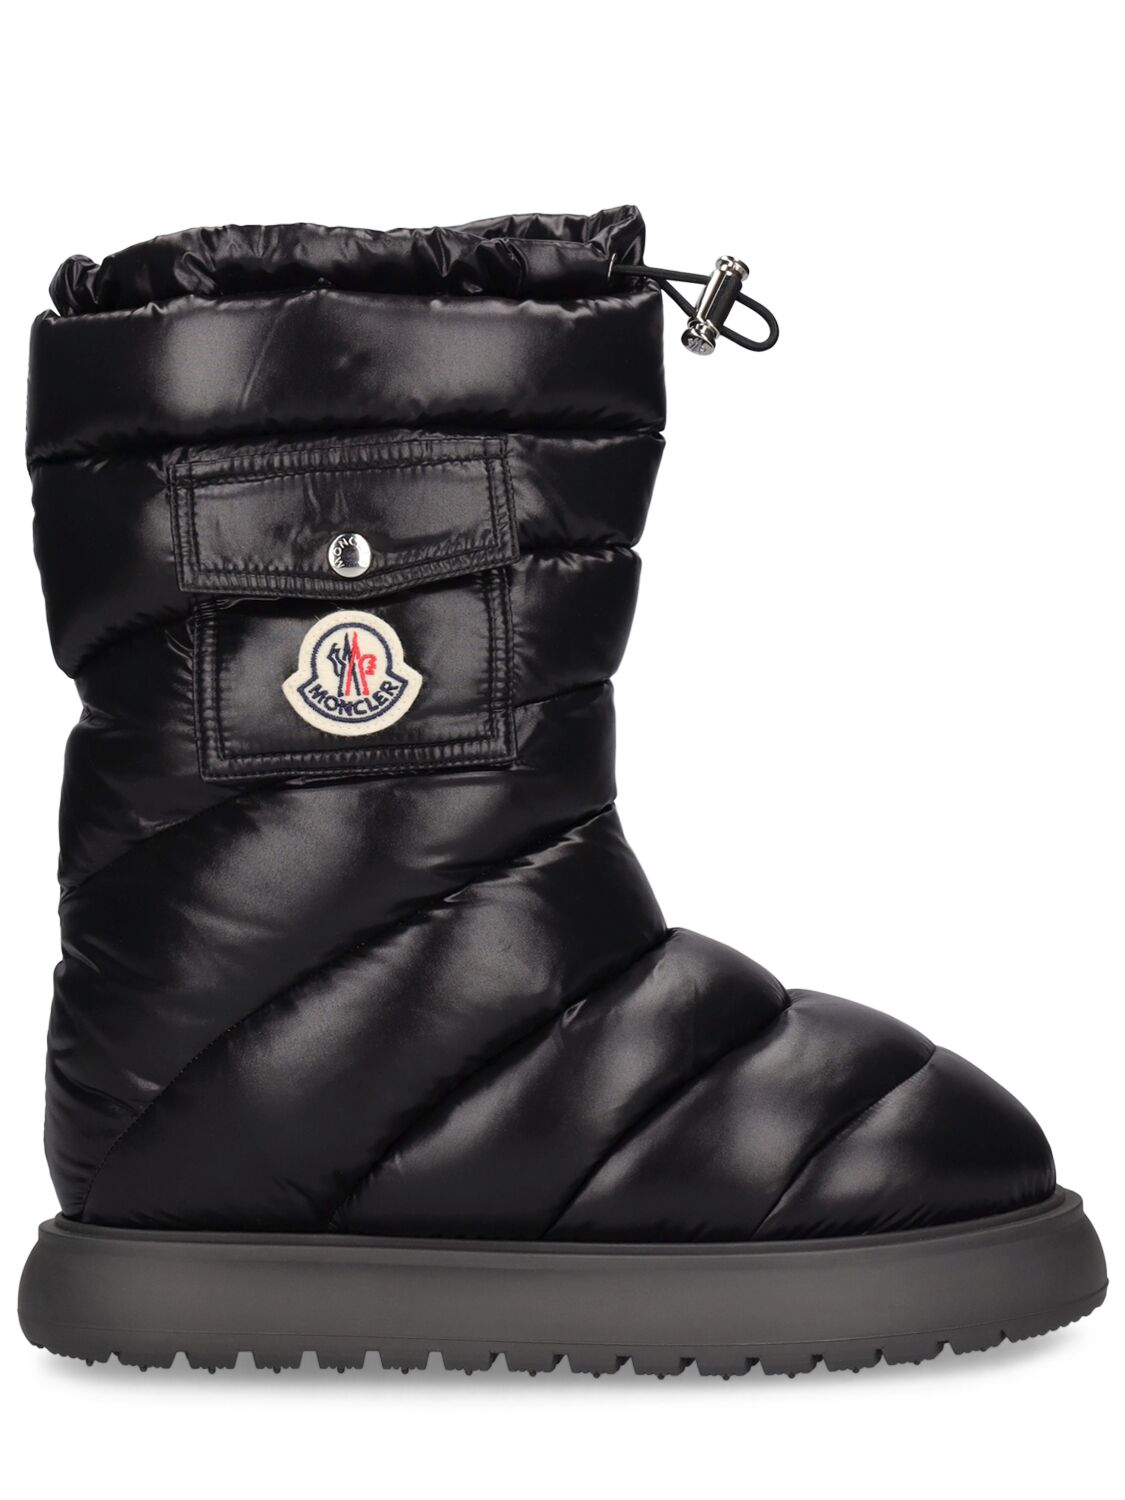 Gaia Pocket Mid Nylon Snow Boots